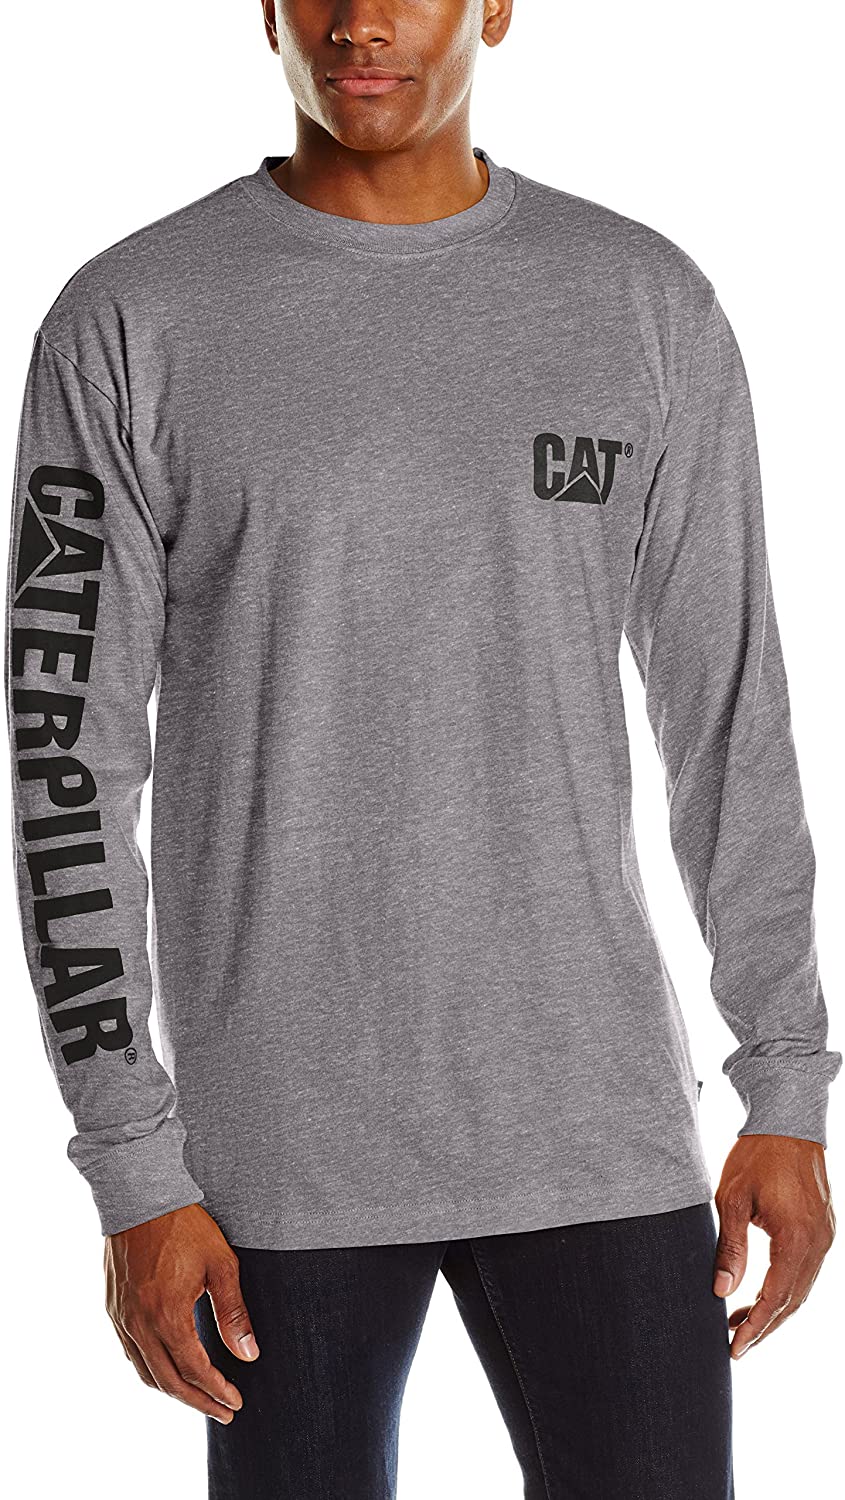 Caterpillar Men's Trademark Banner Long Sleeve T-Shirt Regular and Big & Tall Sizes